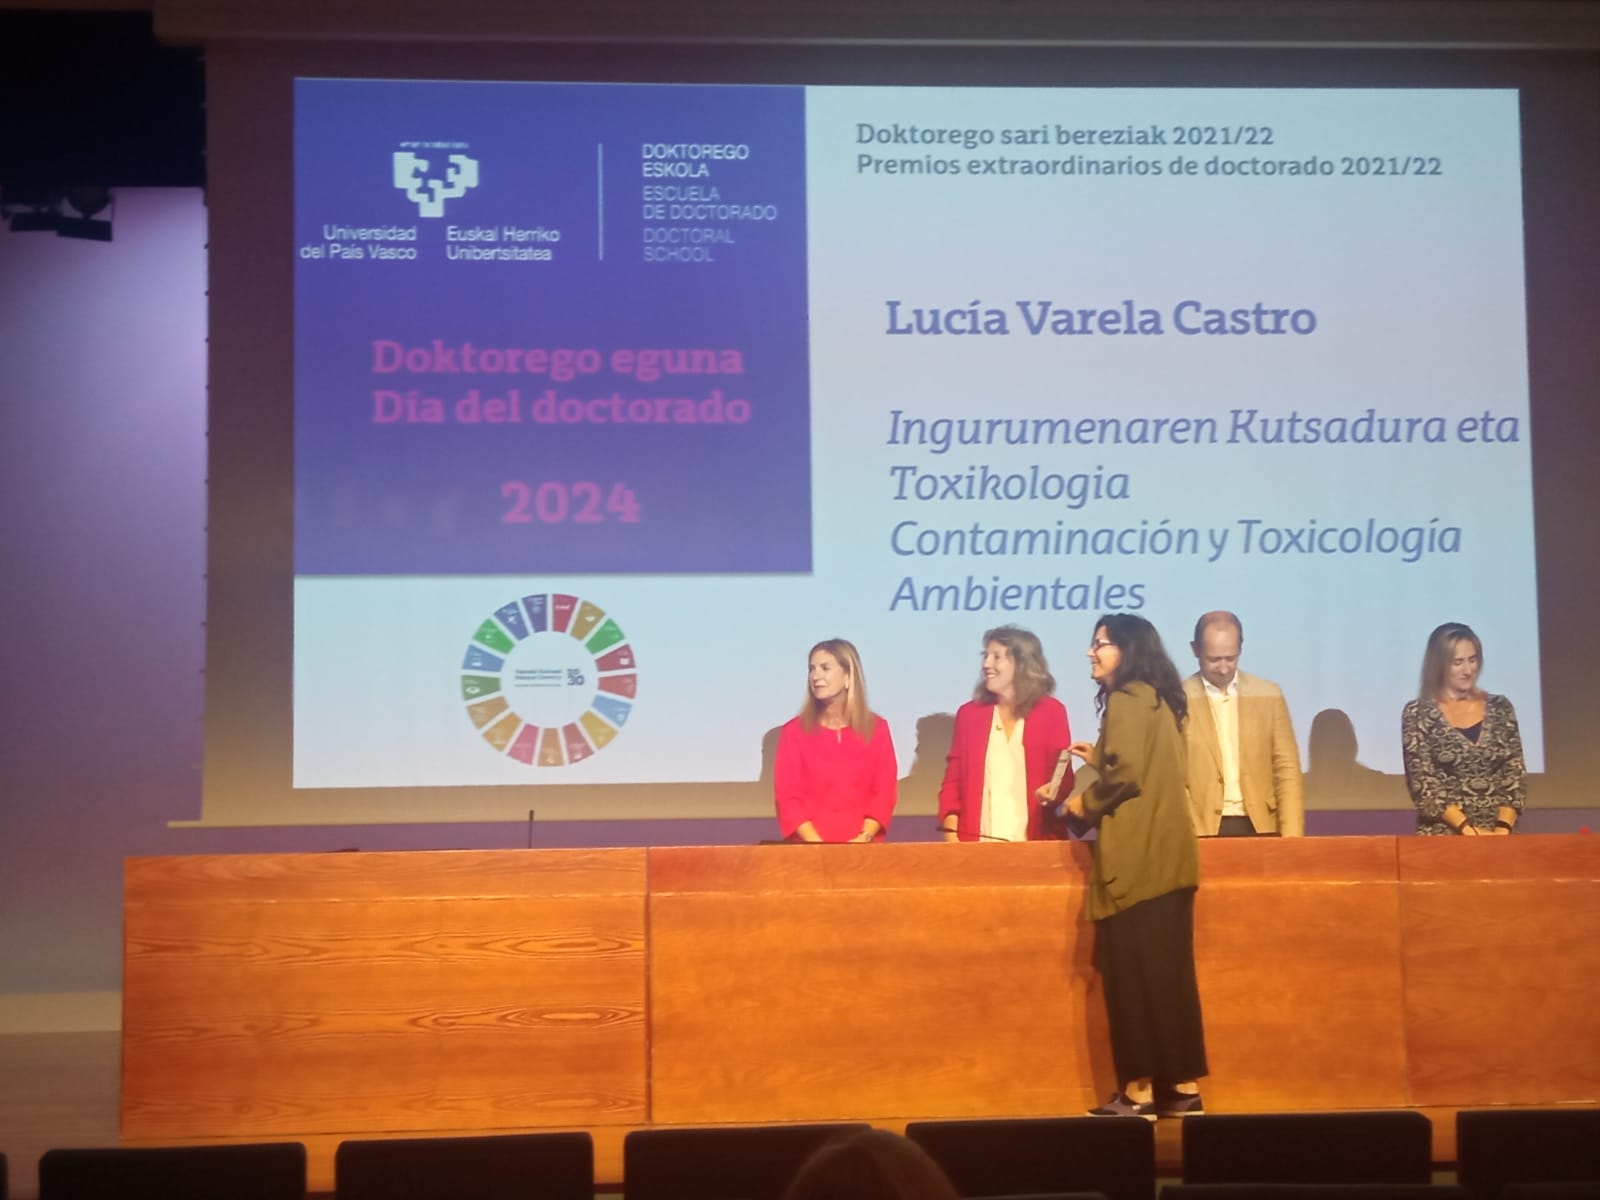 Premio Extraordinario de Doctorado a Lucia Varela